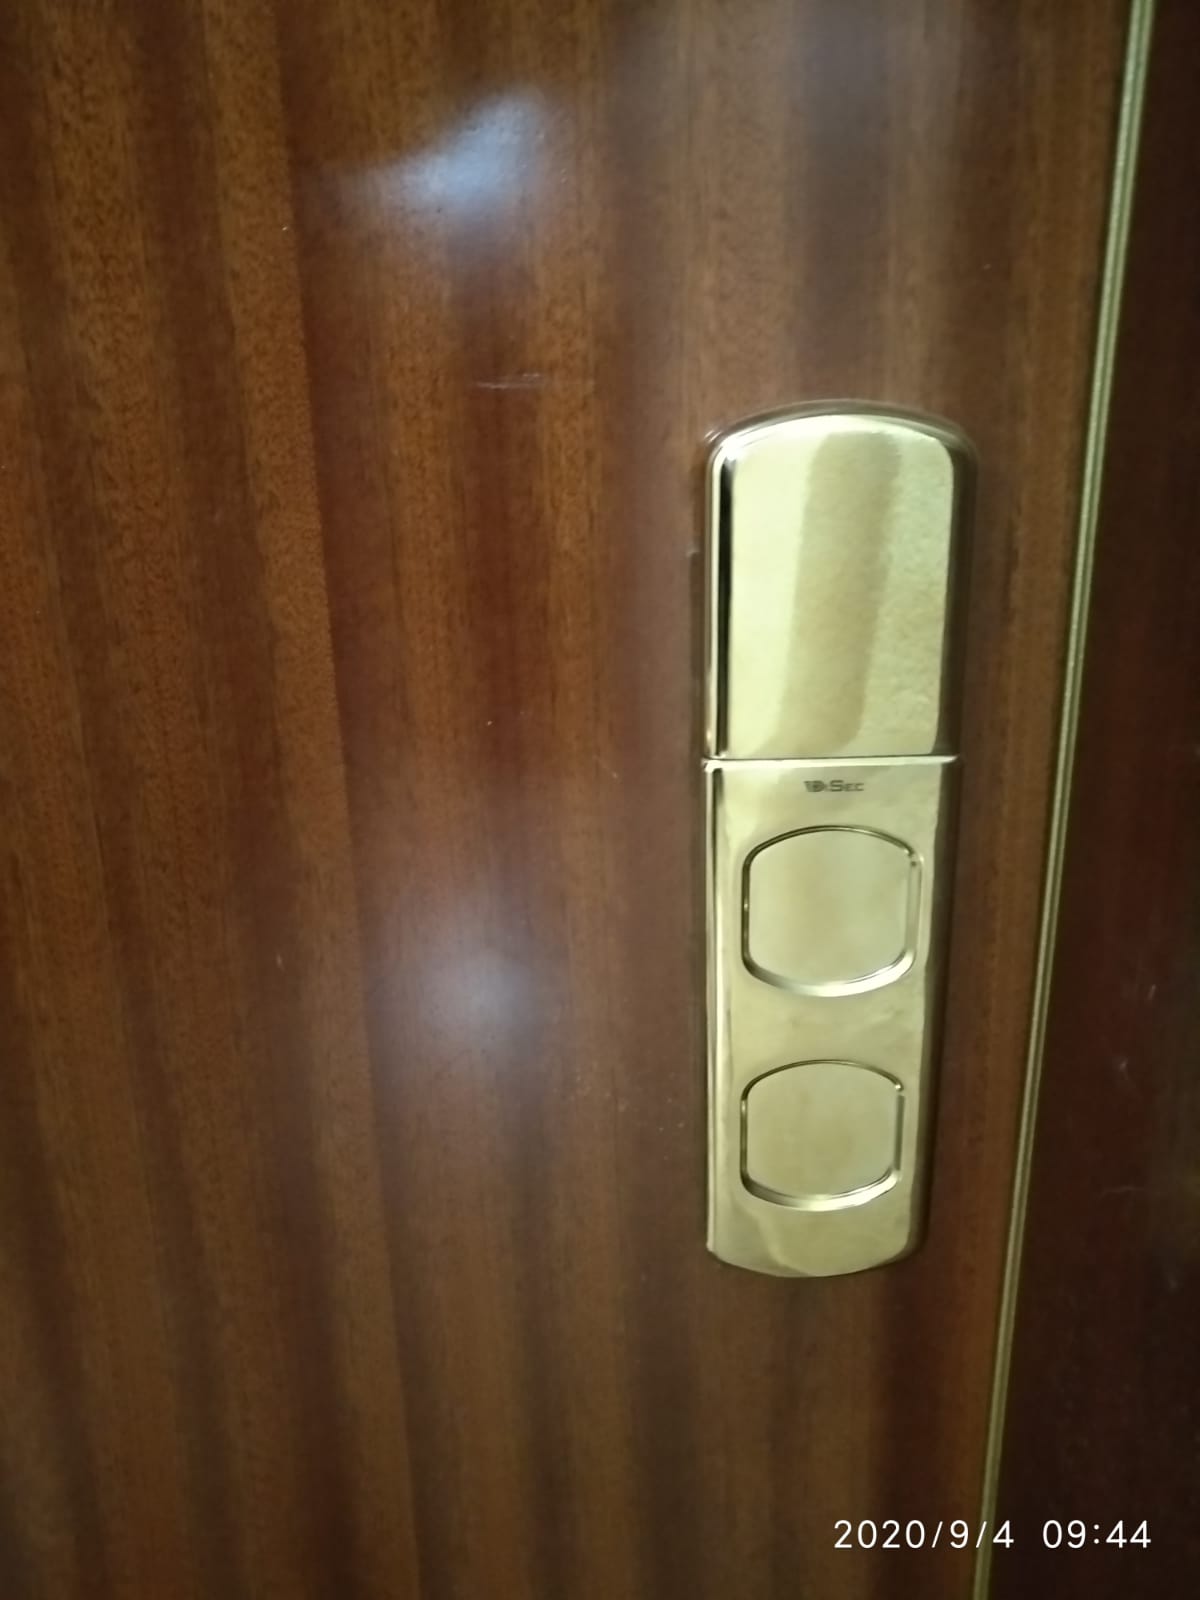 escudo magnetico protector cerraduras puertas 